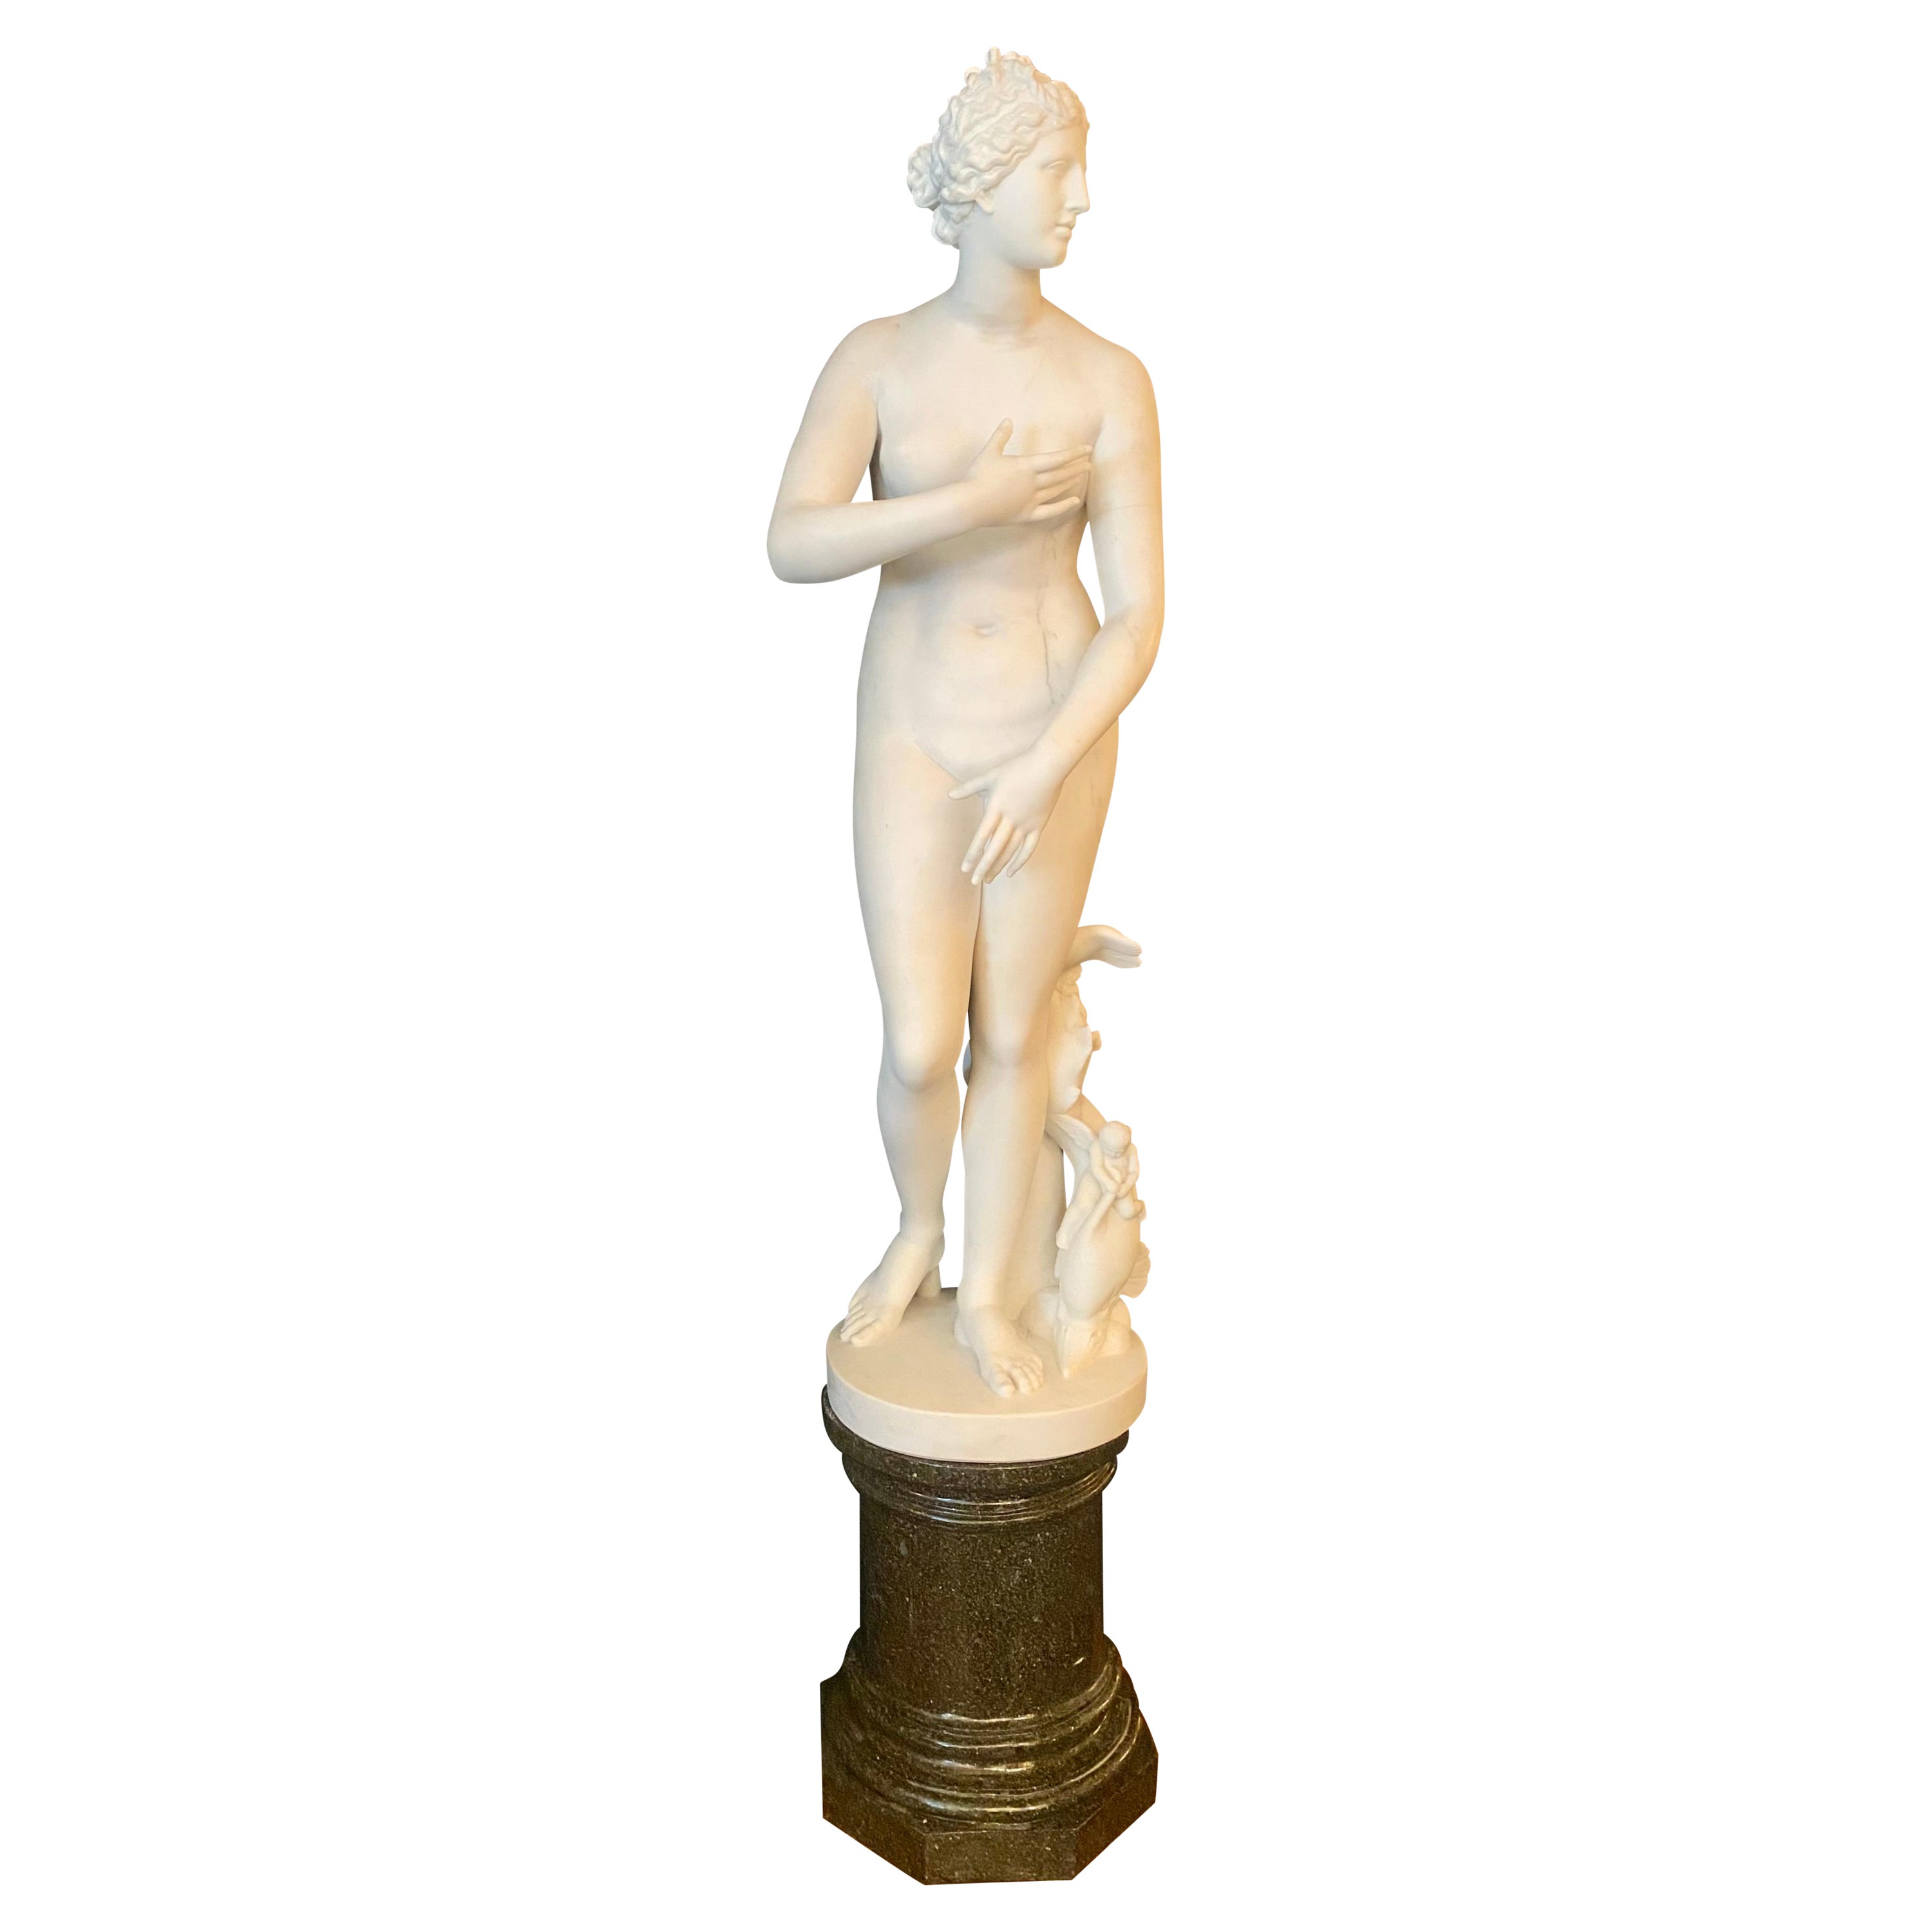 Antique 19th Century Carrara Marble Statue, "Venus D' Medici" by Antonio Frilli